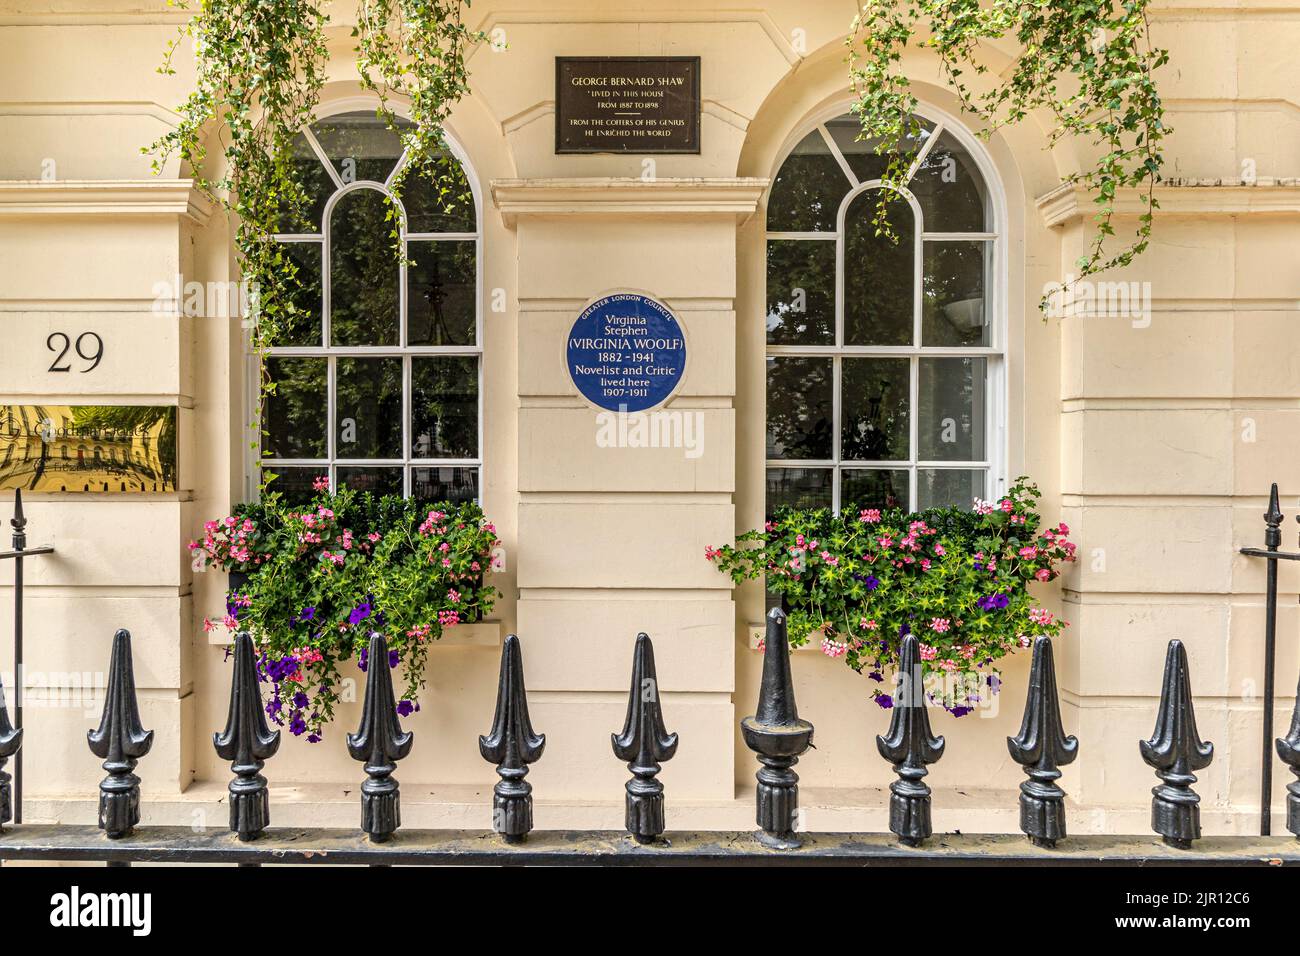 No 29 Fitzroy Square, où Virginia Woolf et George Bernard Shaw vivaient autrefois à Fitzroy Square, une place géorgienne à Fitzrovia, Londres W1 Banque D'Images